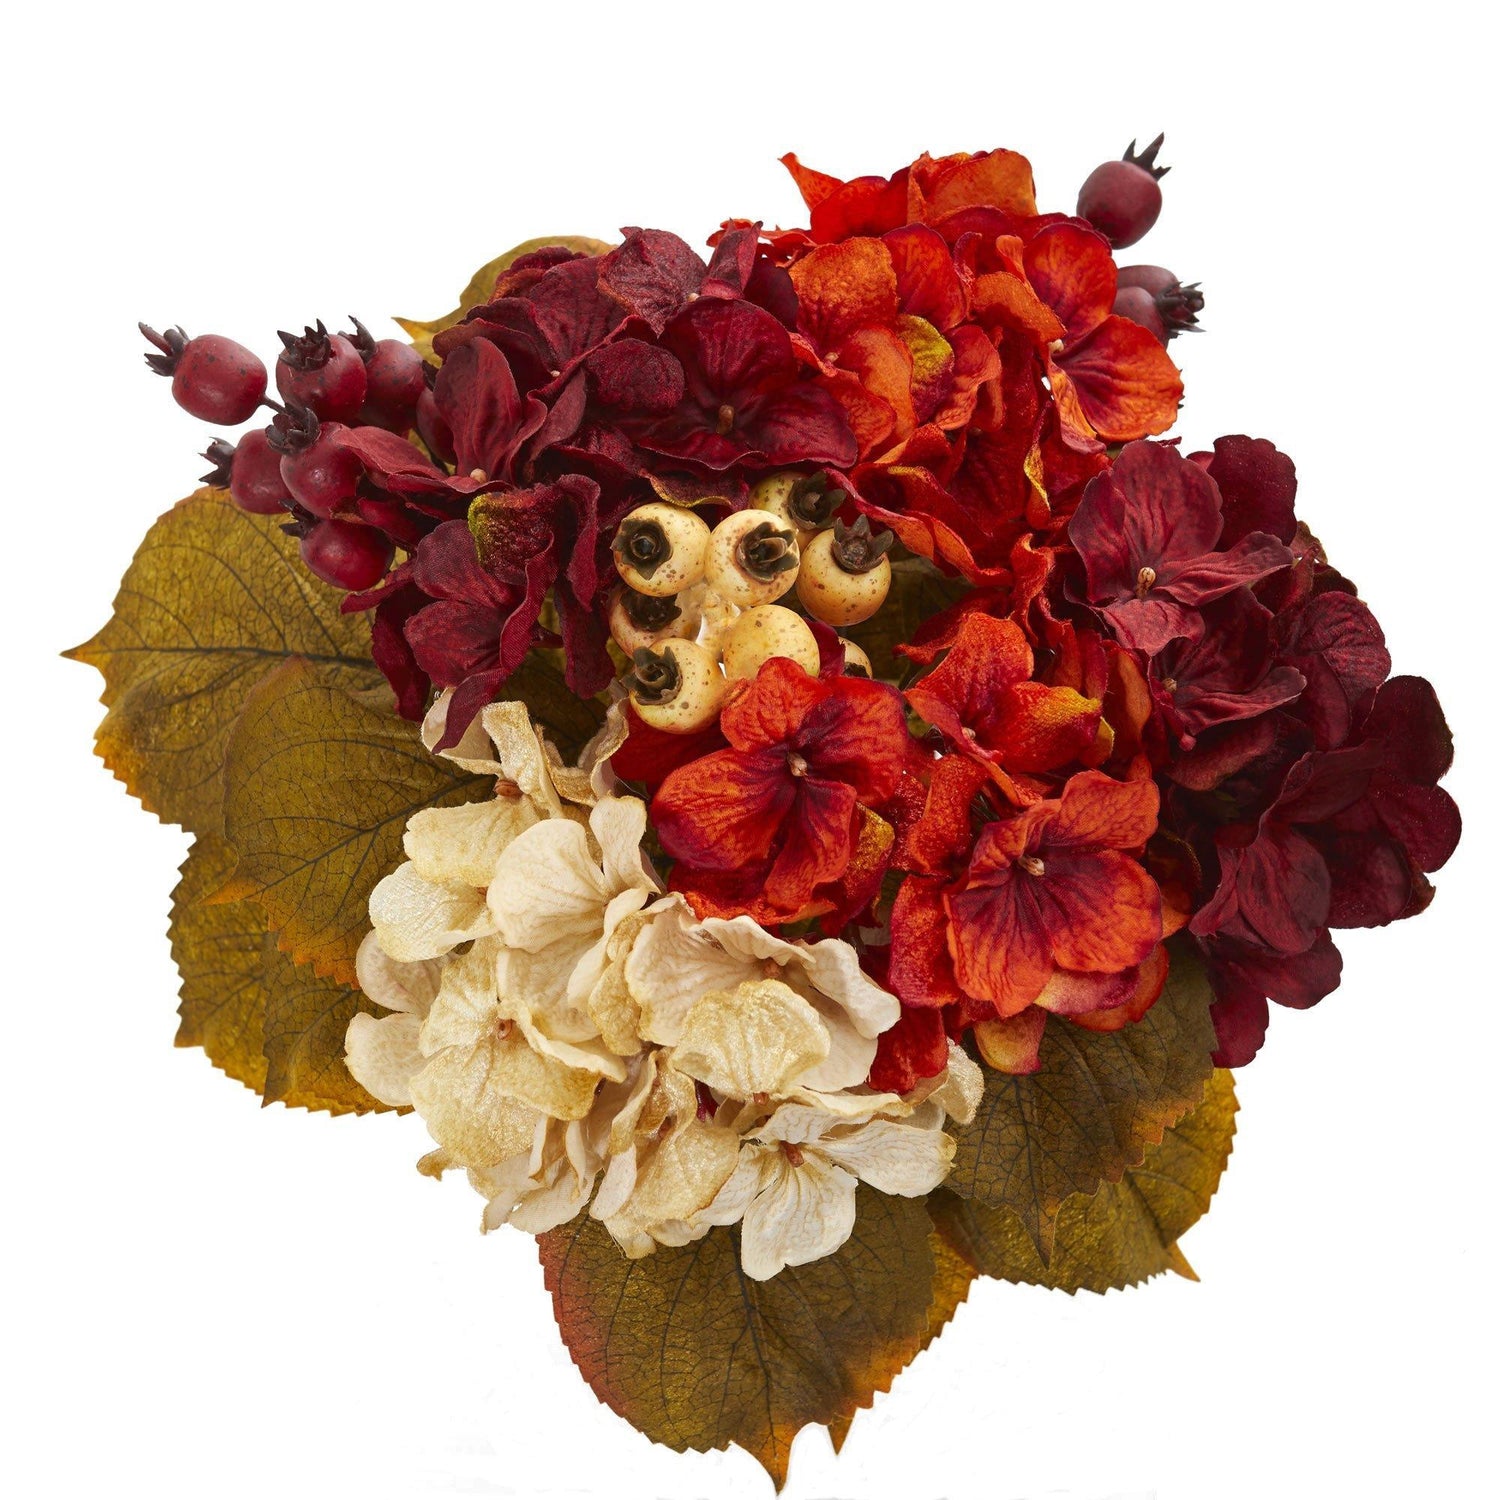 16” Autumn Hydrangea Berry Bouquet Artificial Flower (Set of 2)